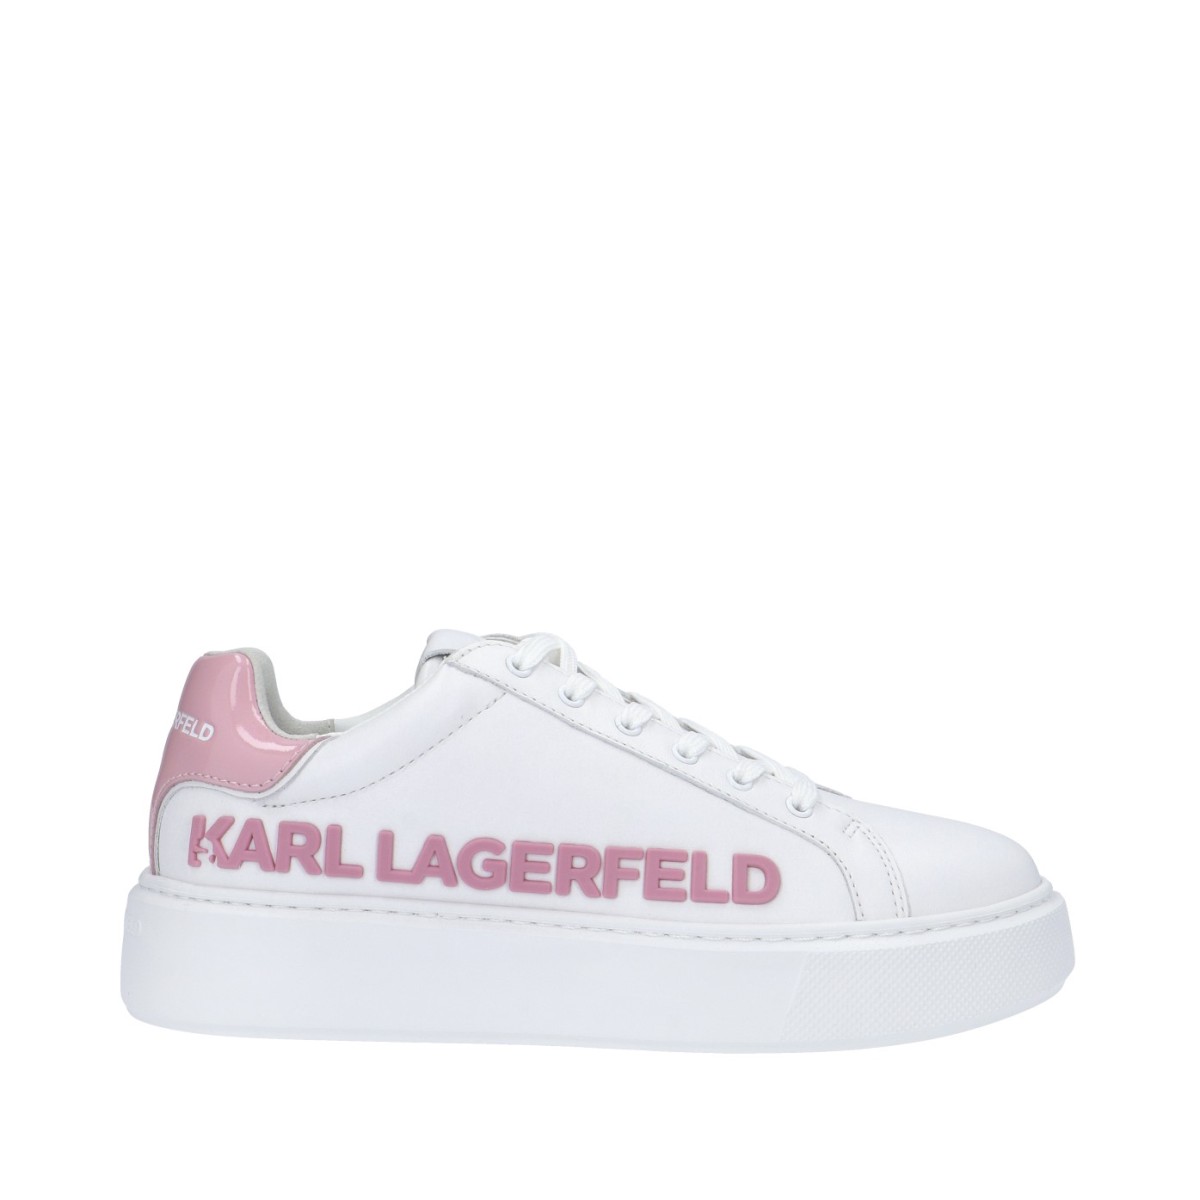 Karl lagerfeld Sneaker Bianco/rosa Gomma KL62210